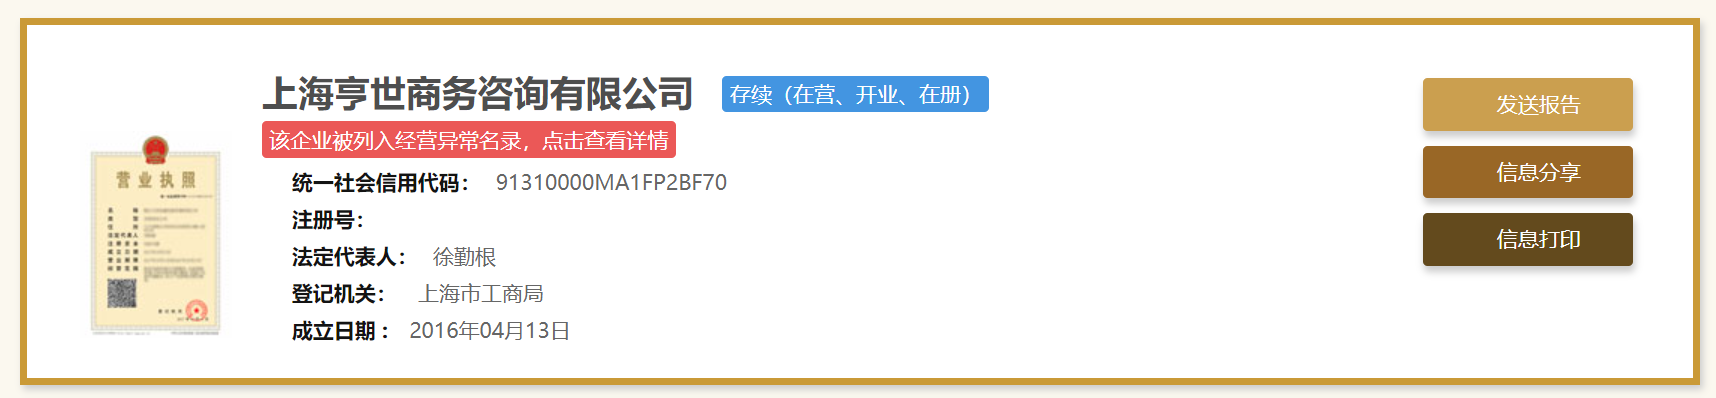 上海亨世商务咨询有限公司被列入经营异常名录，徐勤根担任法定代表人。上海市市场监督管理局官网截图